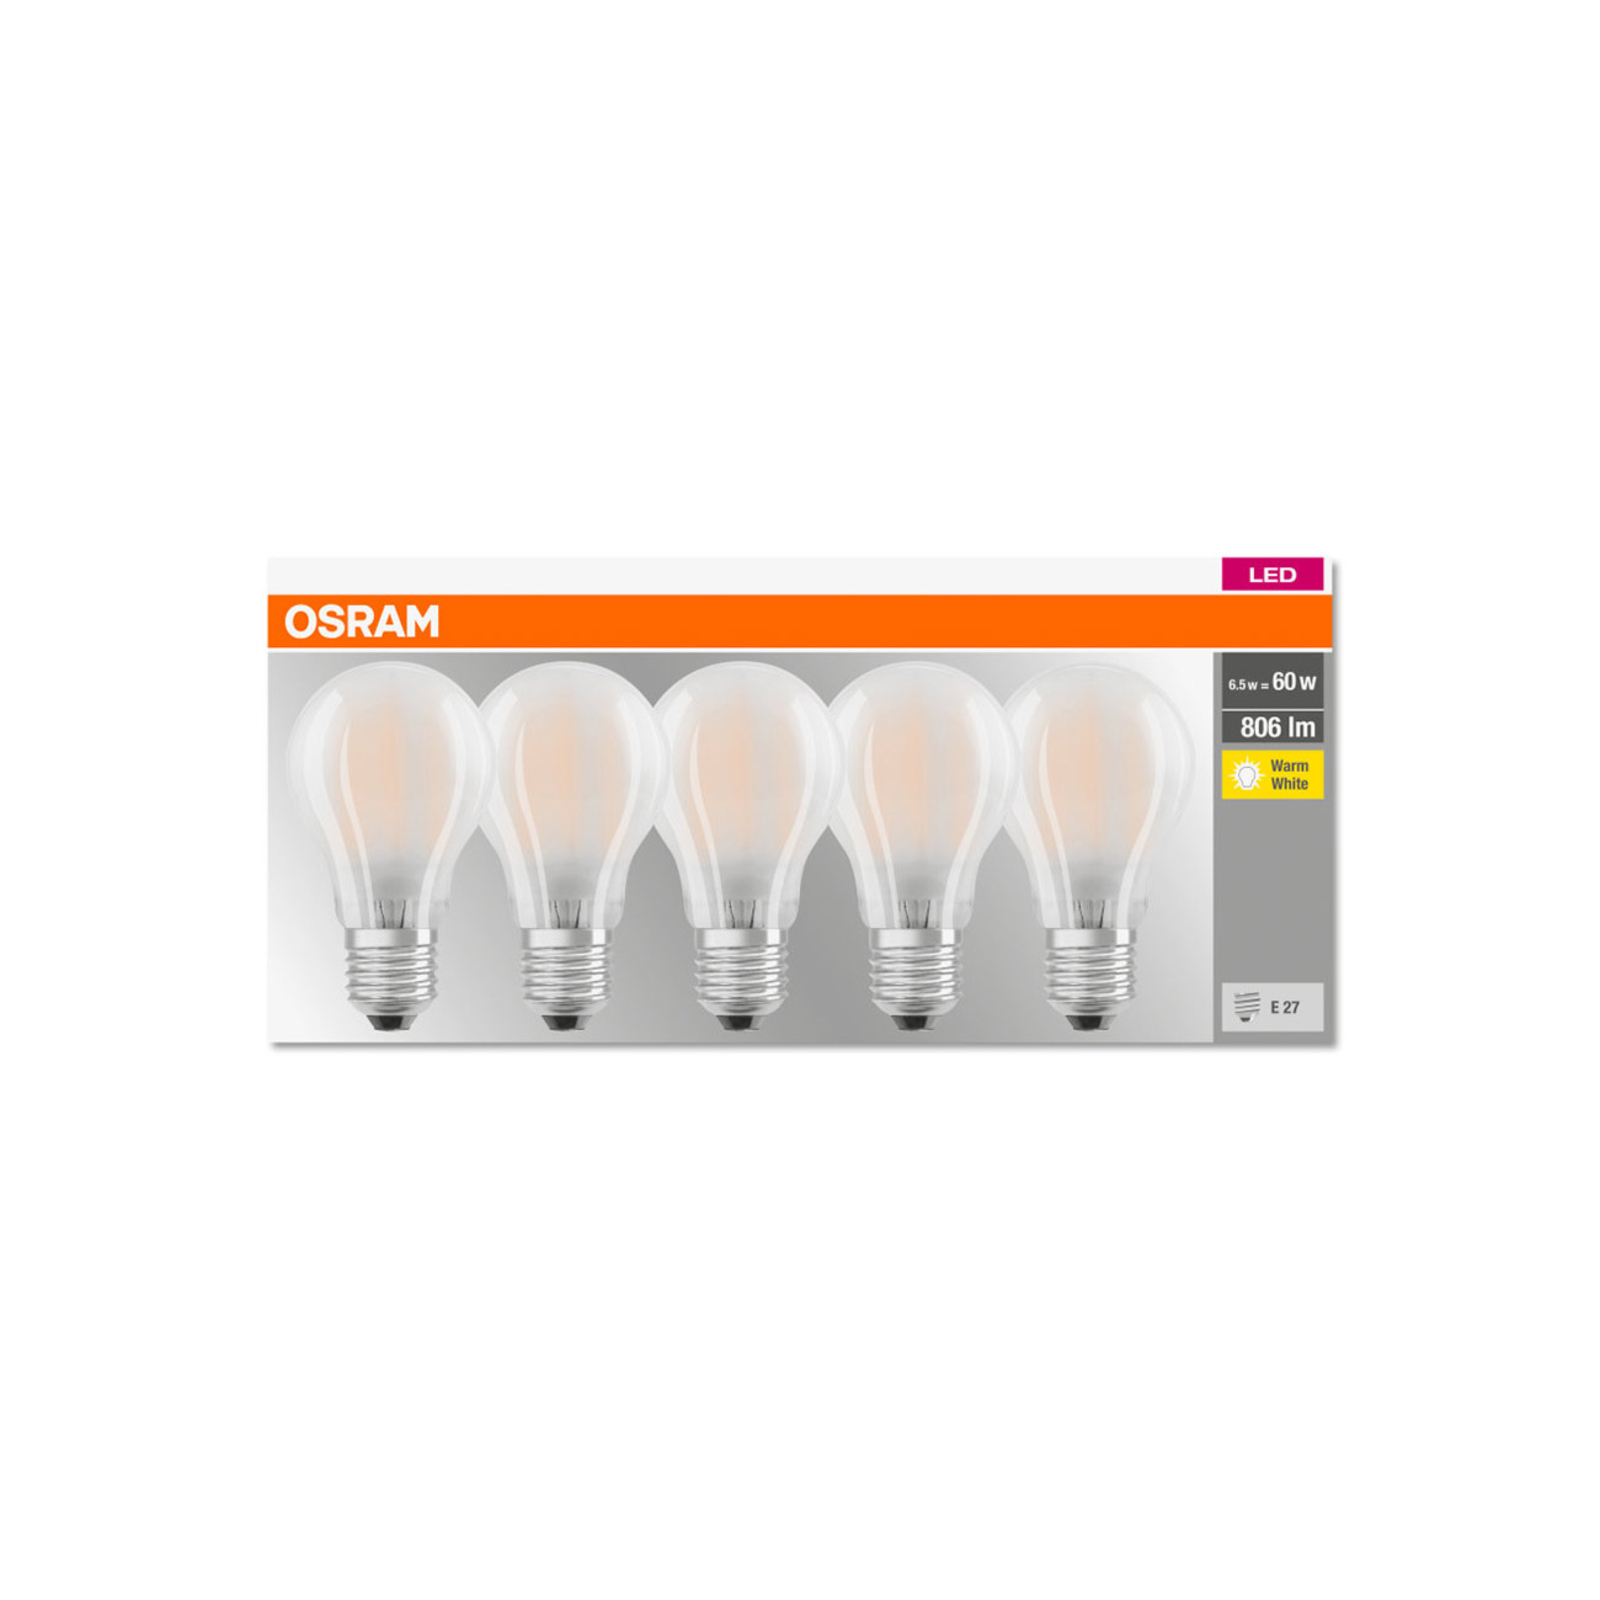 OSRAM Classic LED bulb E27 7W 2,700K 806lm 5x